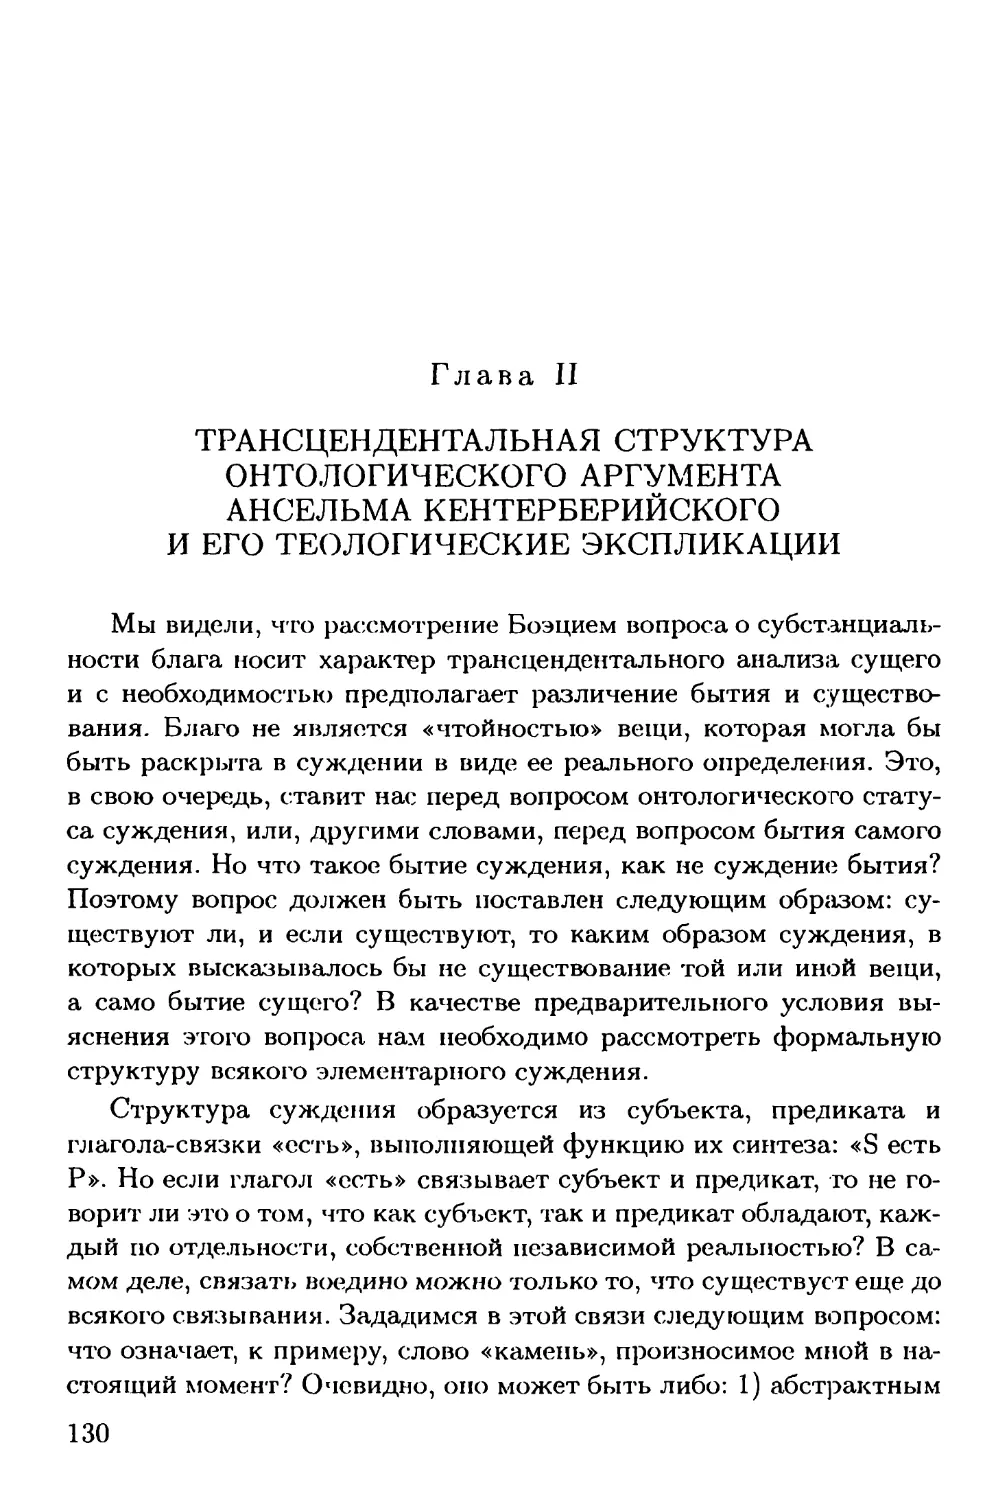 Глава II. Трансцендентальная структура онтологического аргумента Ансельма Кентерберийского и его теологические экспликации.